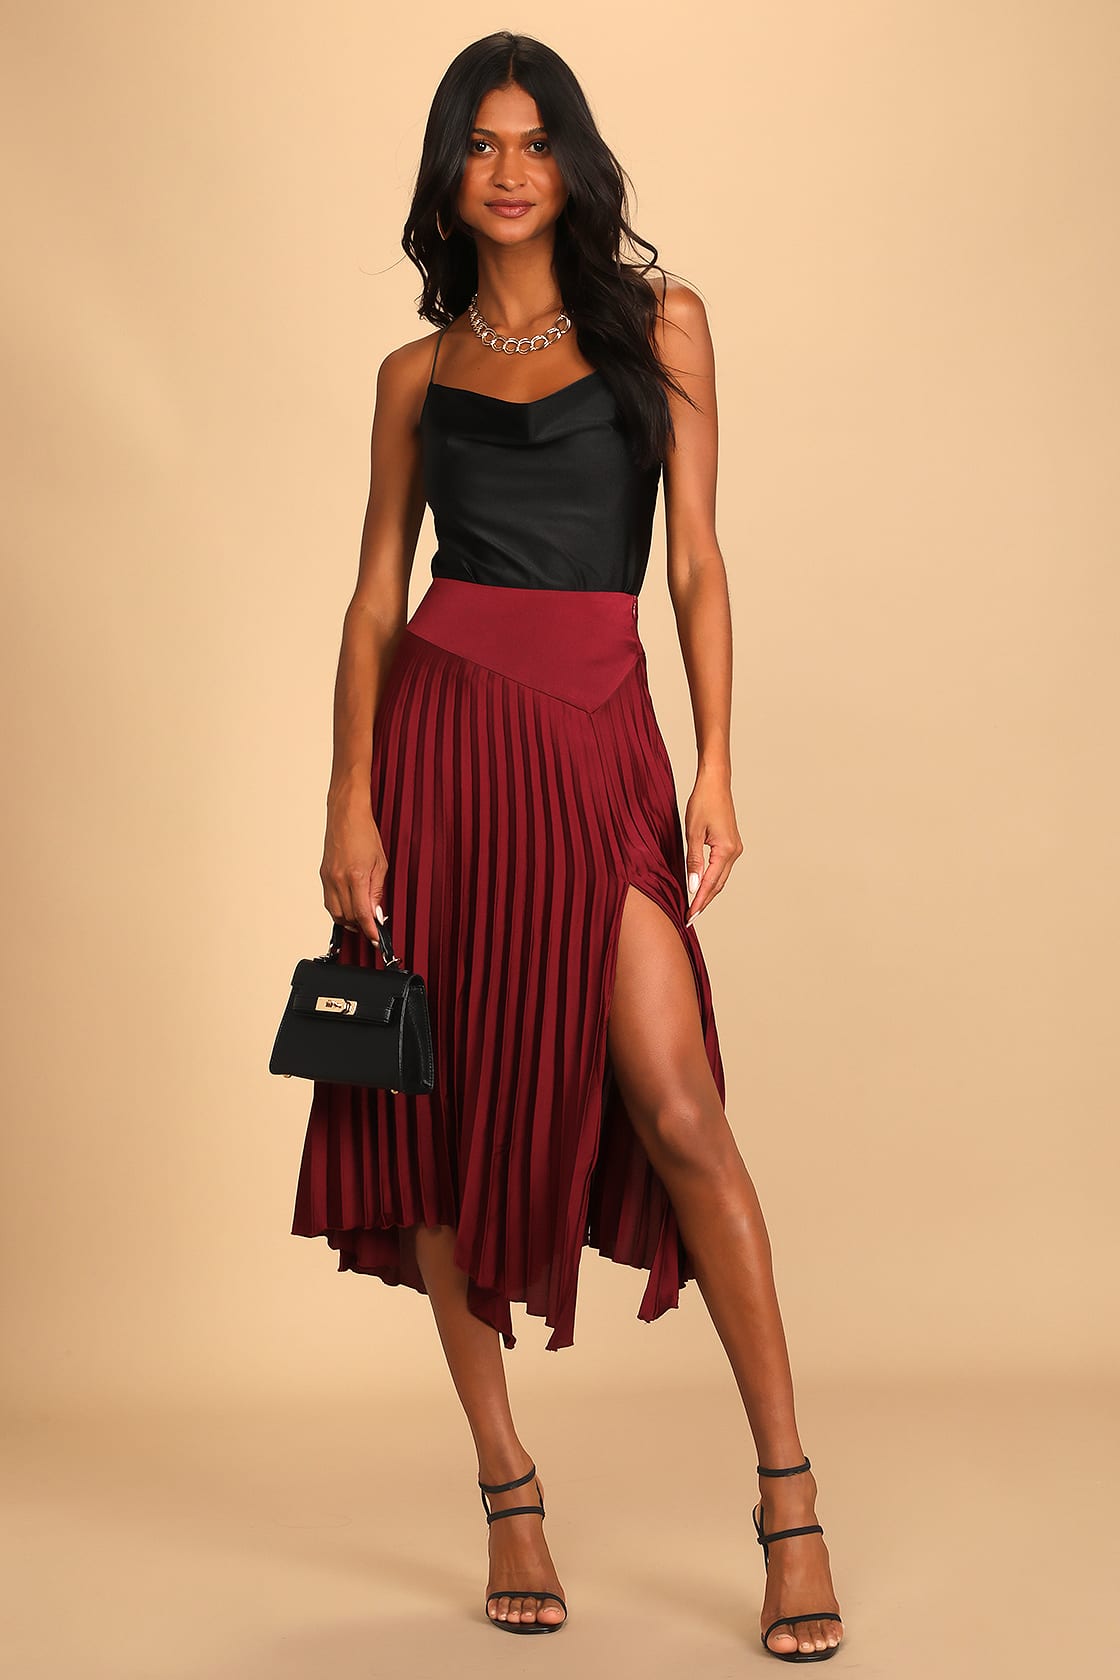 Feeling Pretty Pleased Burgundy Asymmetrical Midi Skirt, red pleated long skirt